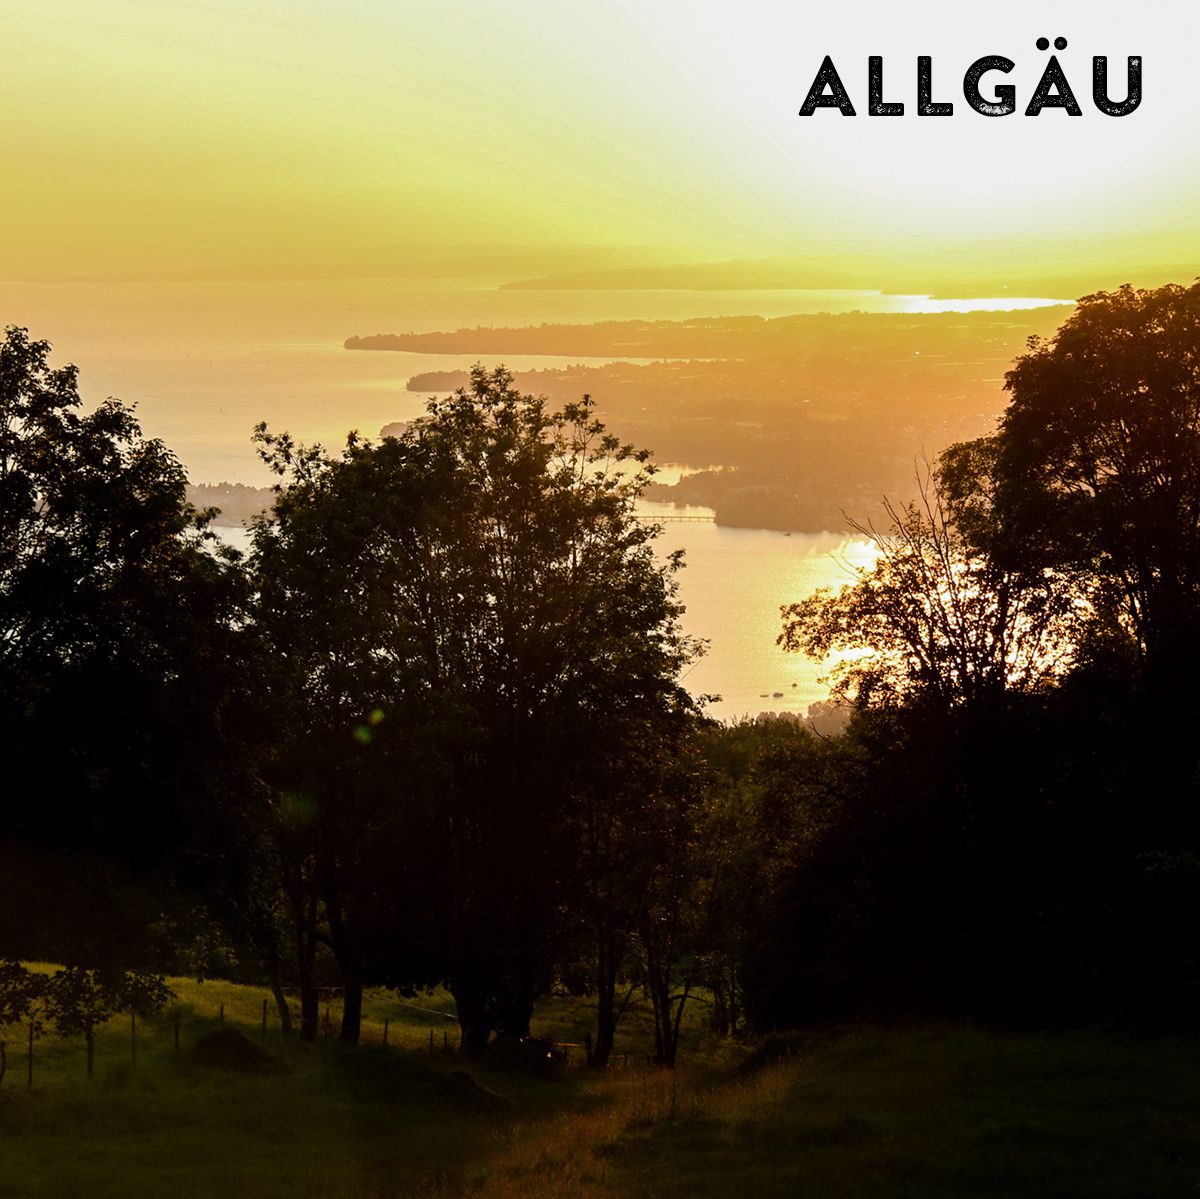 Abendstimmung mit einem bewaldeten Hügel und im Hintergrund der Bodensee sowie der Schriftzug "Allgäu"